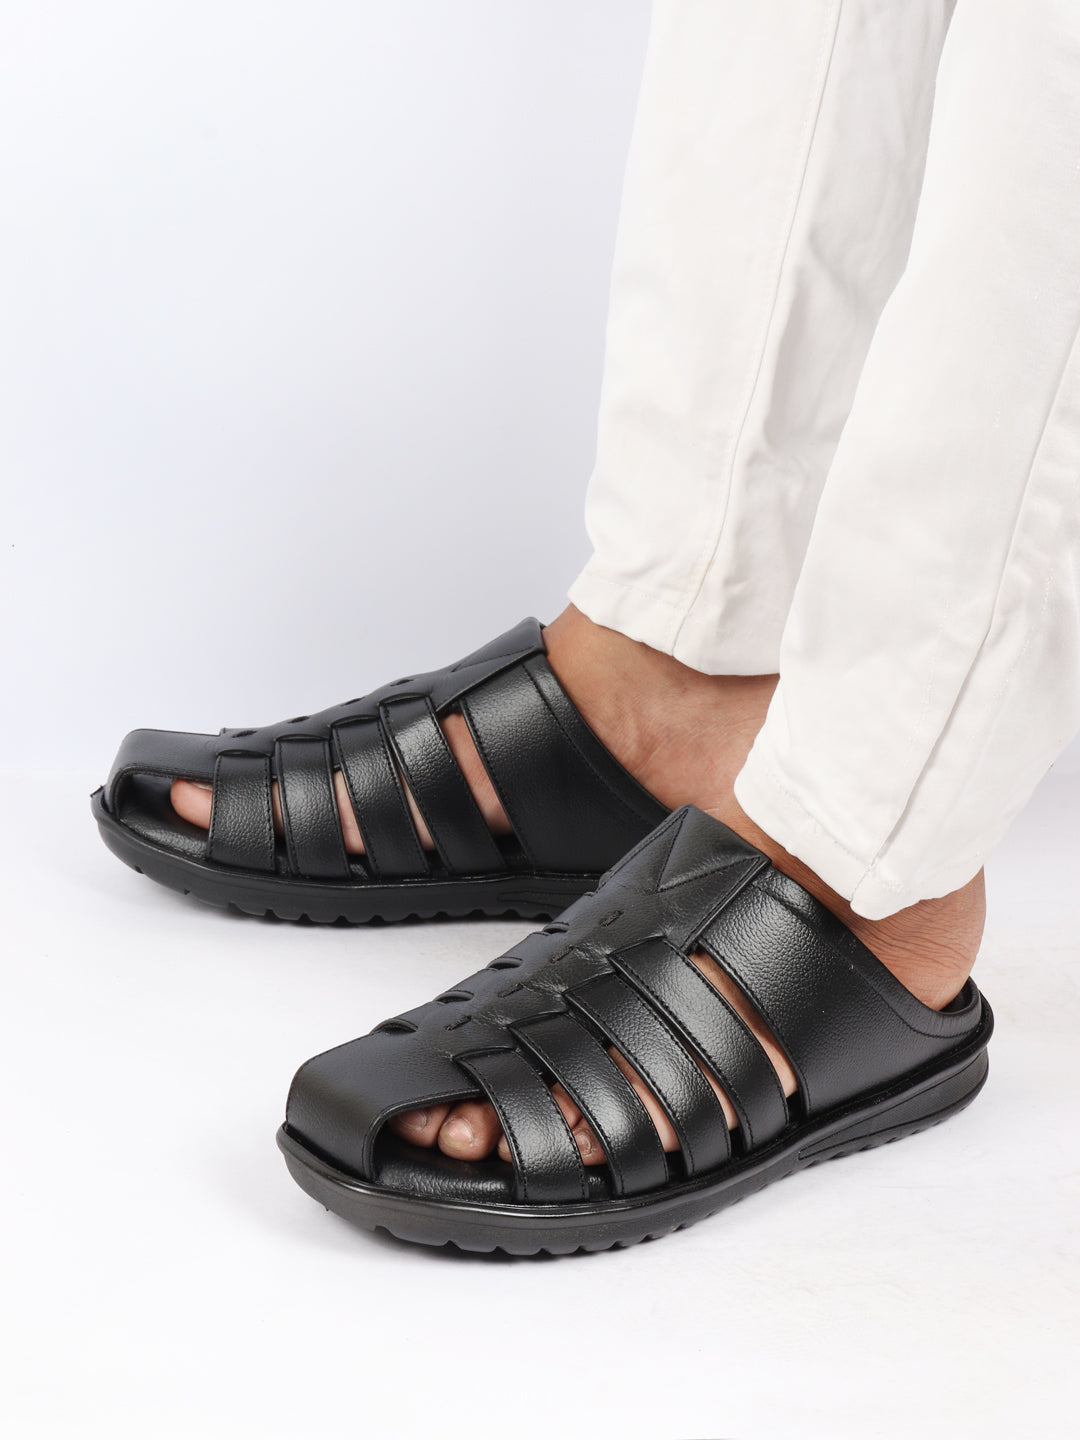 Buy Regal Tan Men Leather Comfort Sandals Shoes Online at Regal Shoes  |8027170